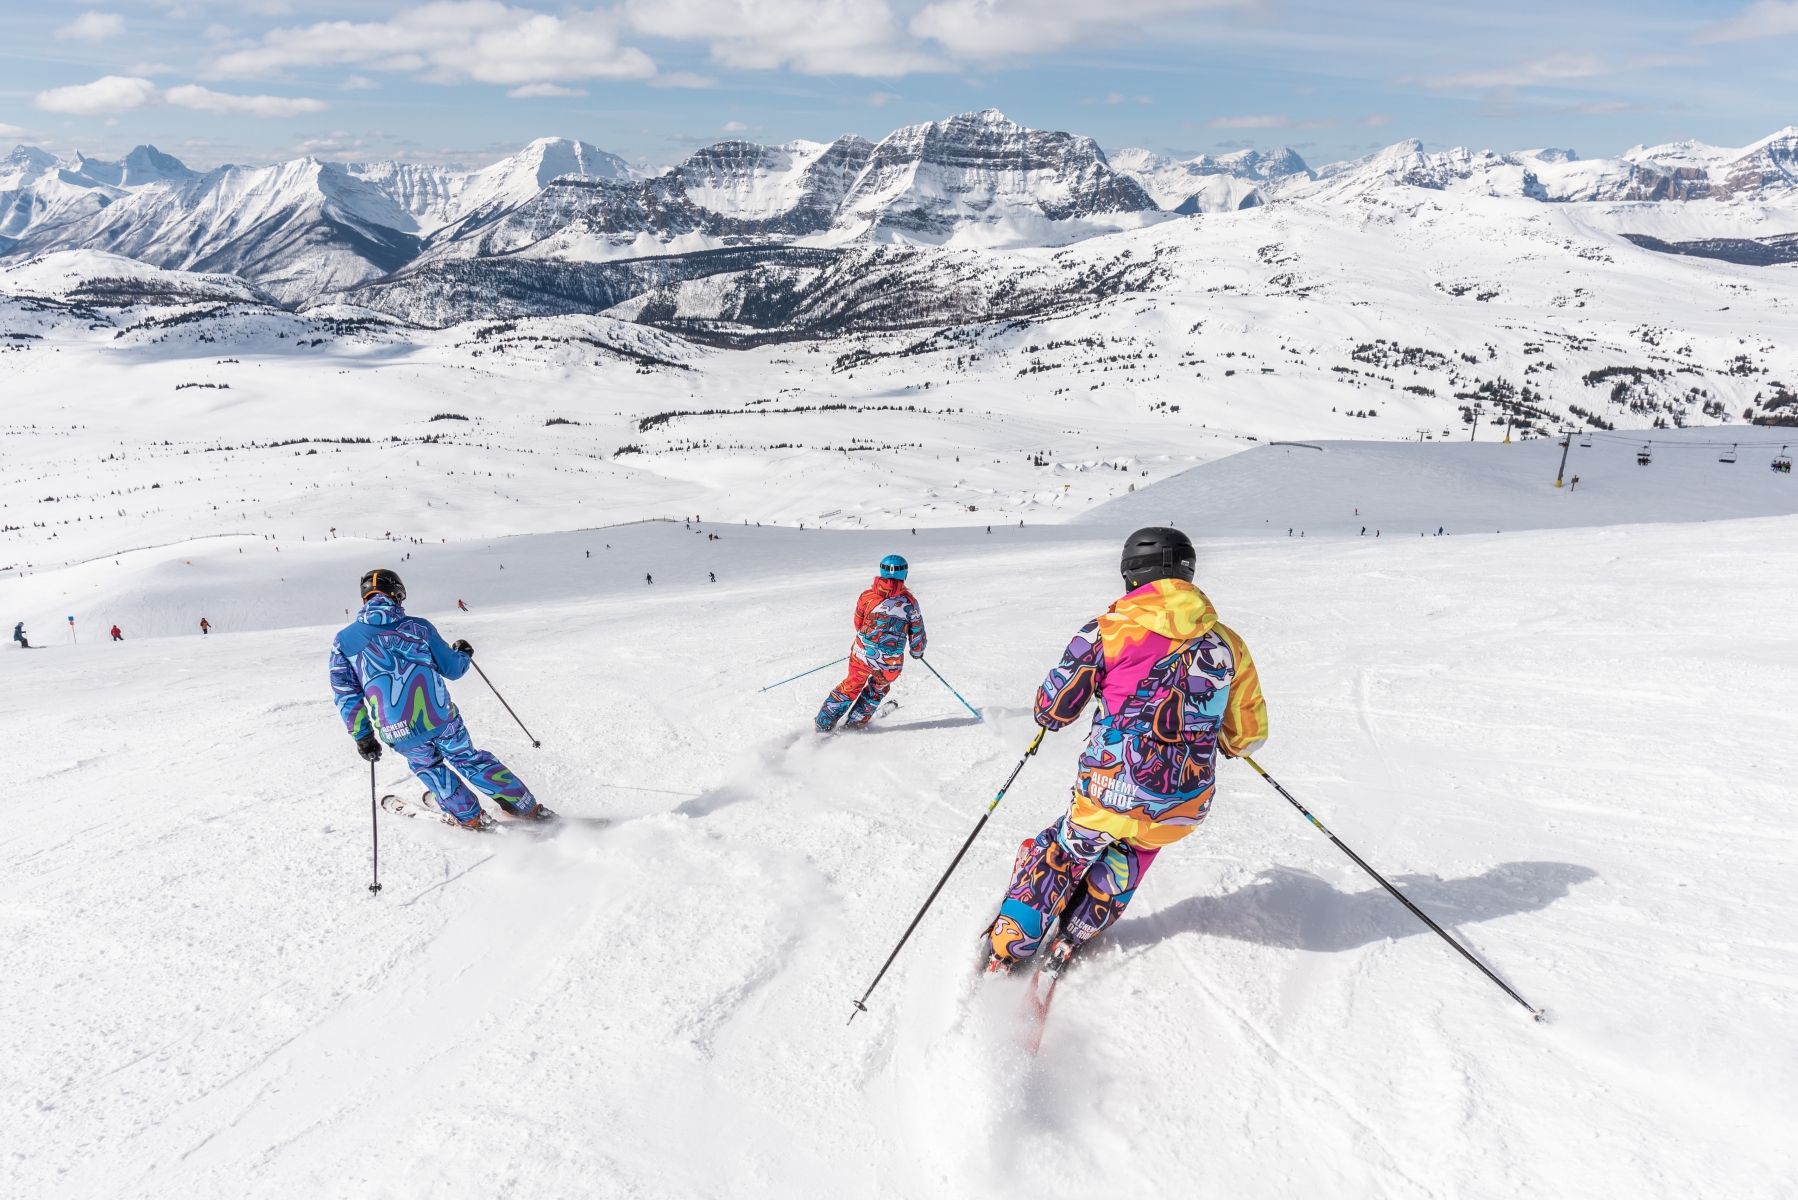 Trượt tuyết - hoạt động thường được diễn ra vào mùa đông